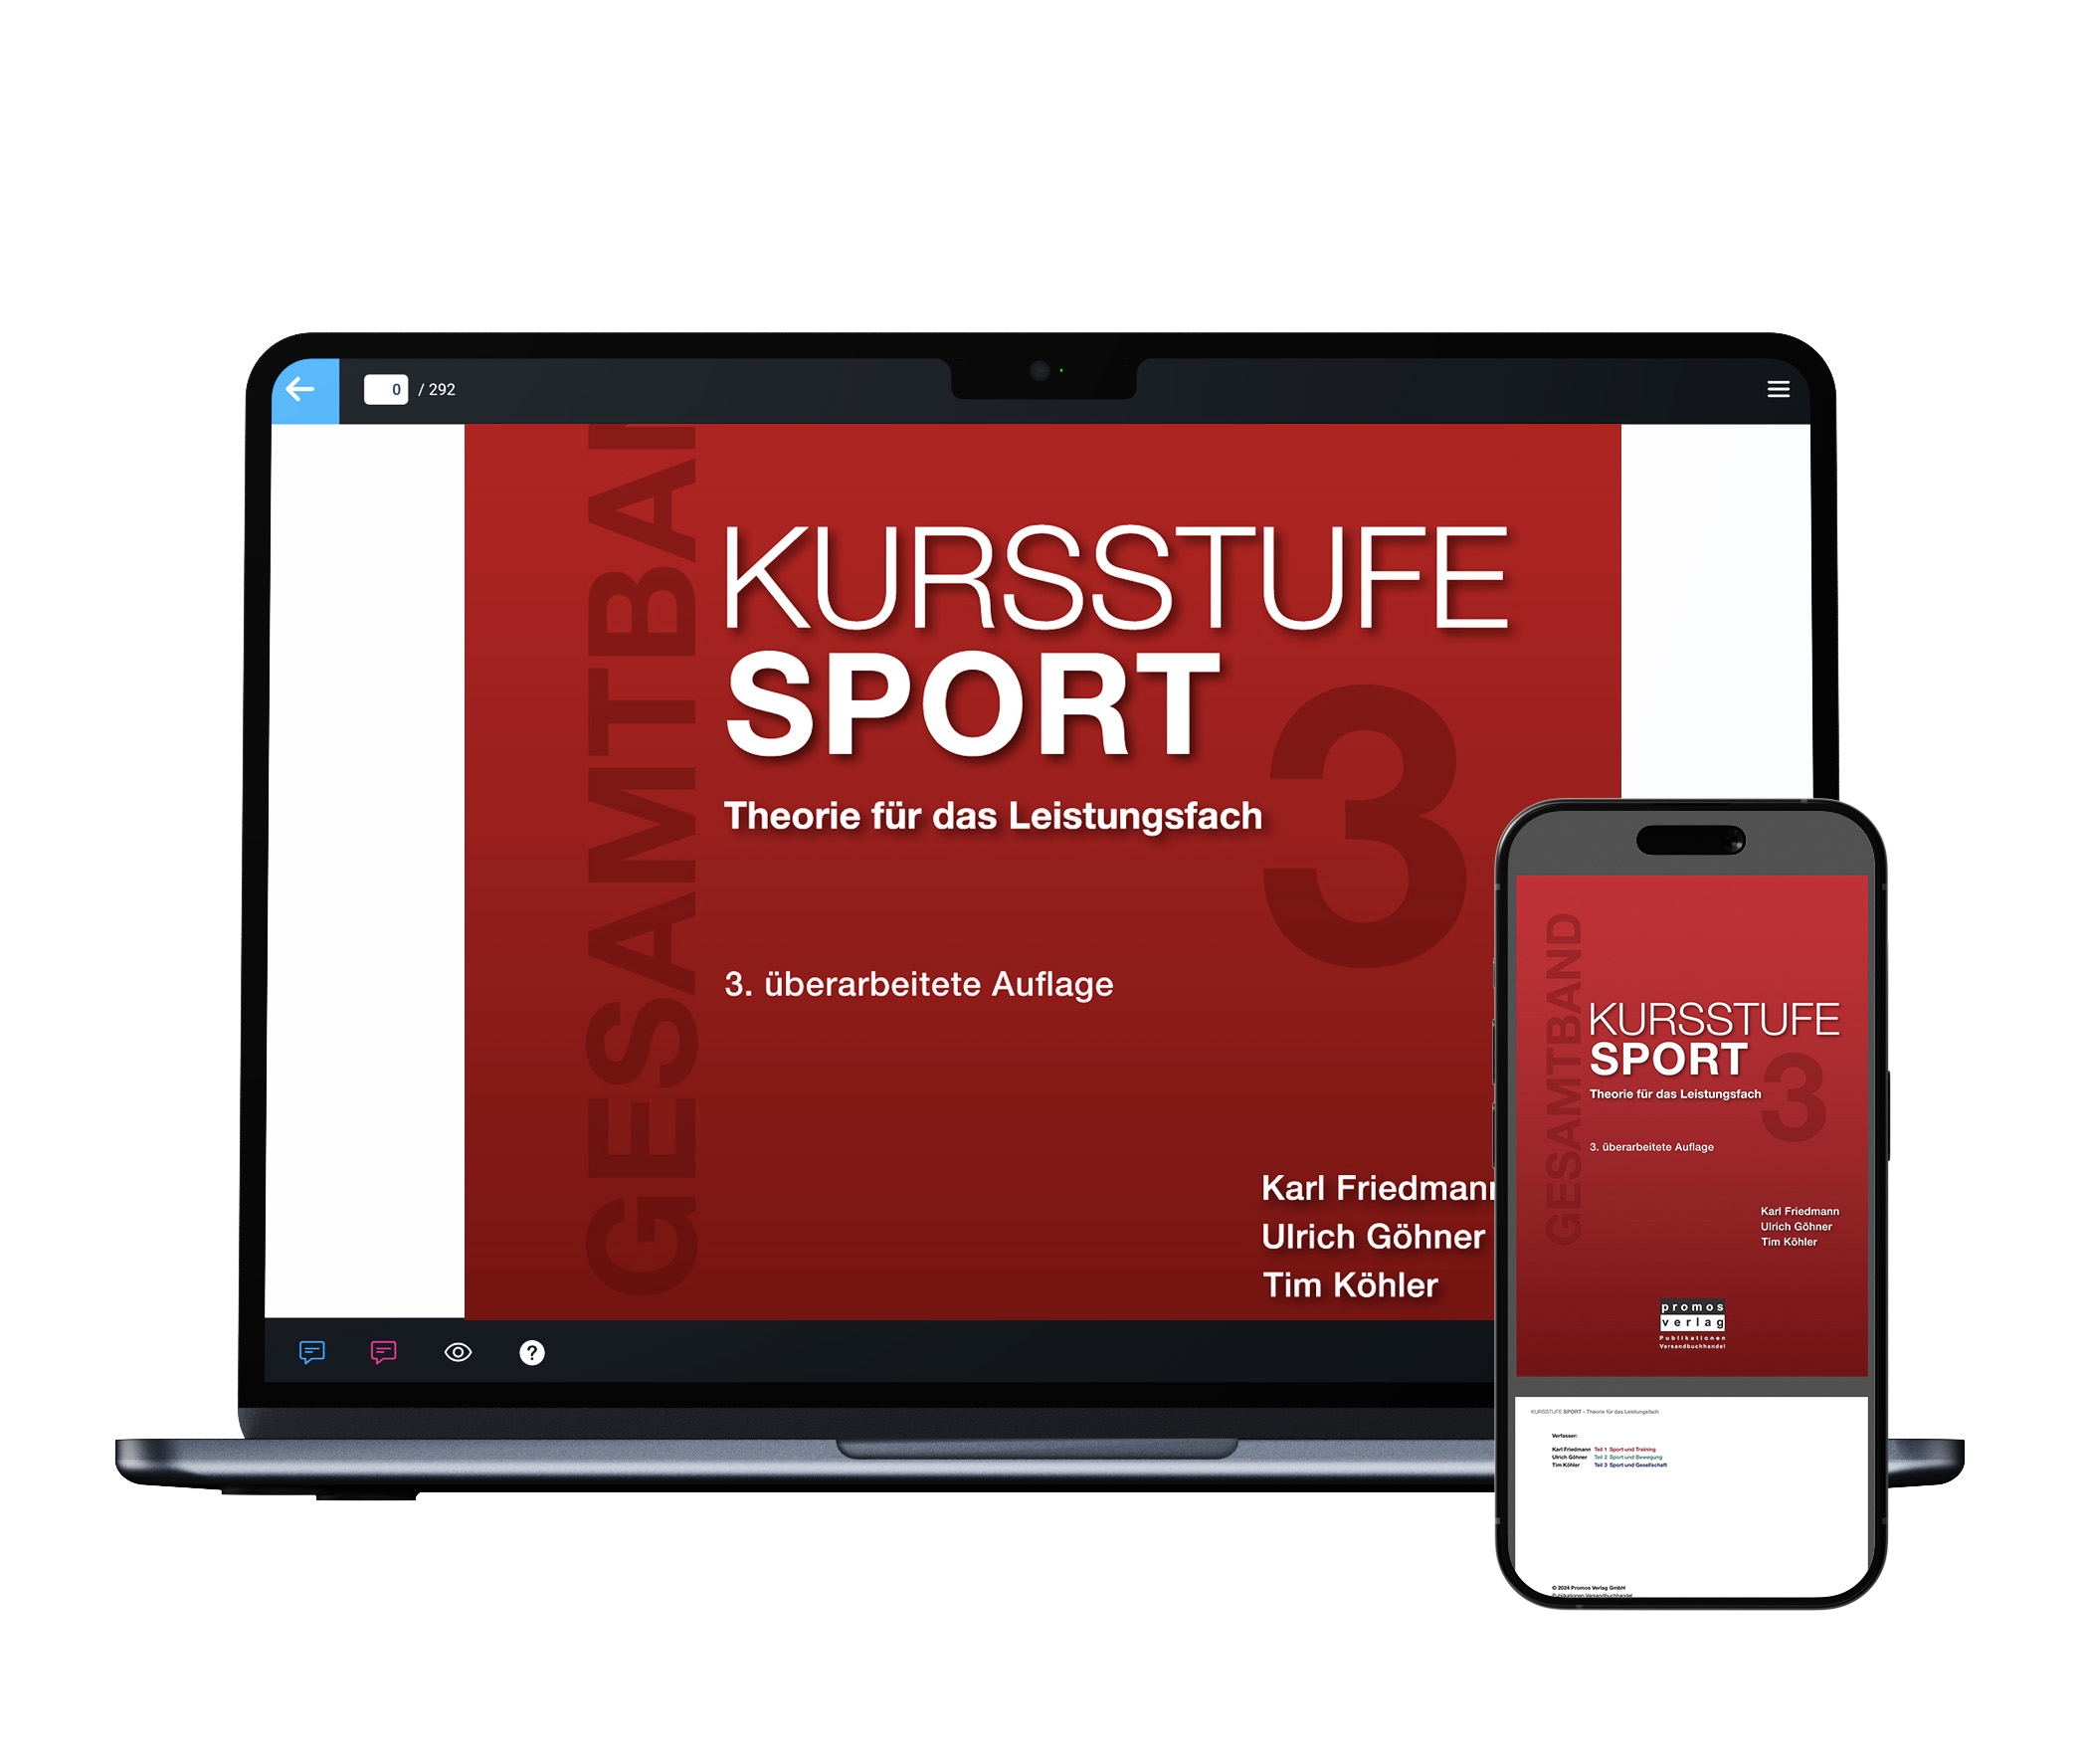 Kursstufe Sport – Theorie für das Leistungsfach (Ebook – Einzellizenz)